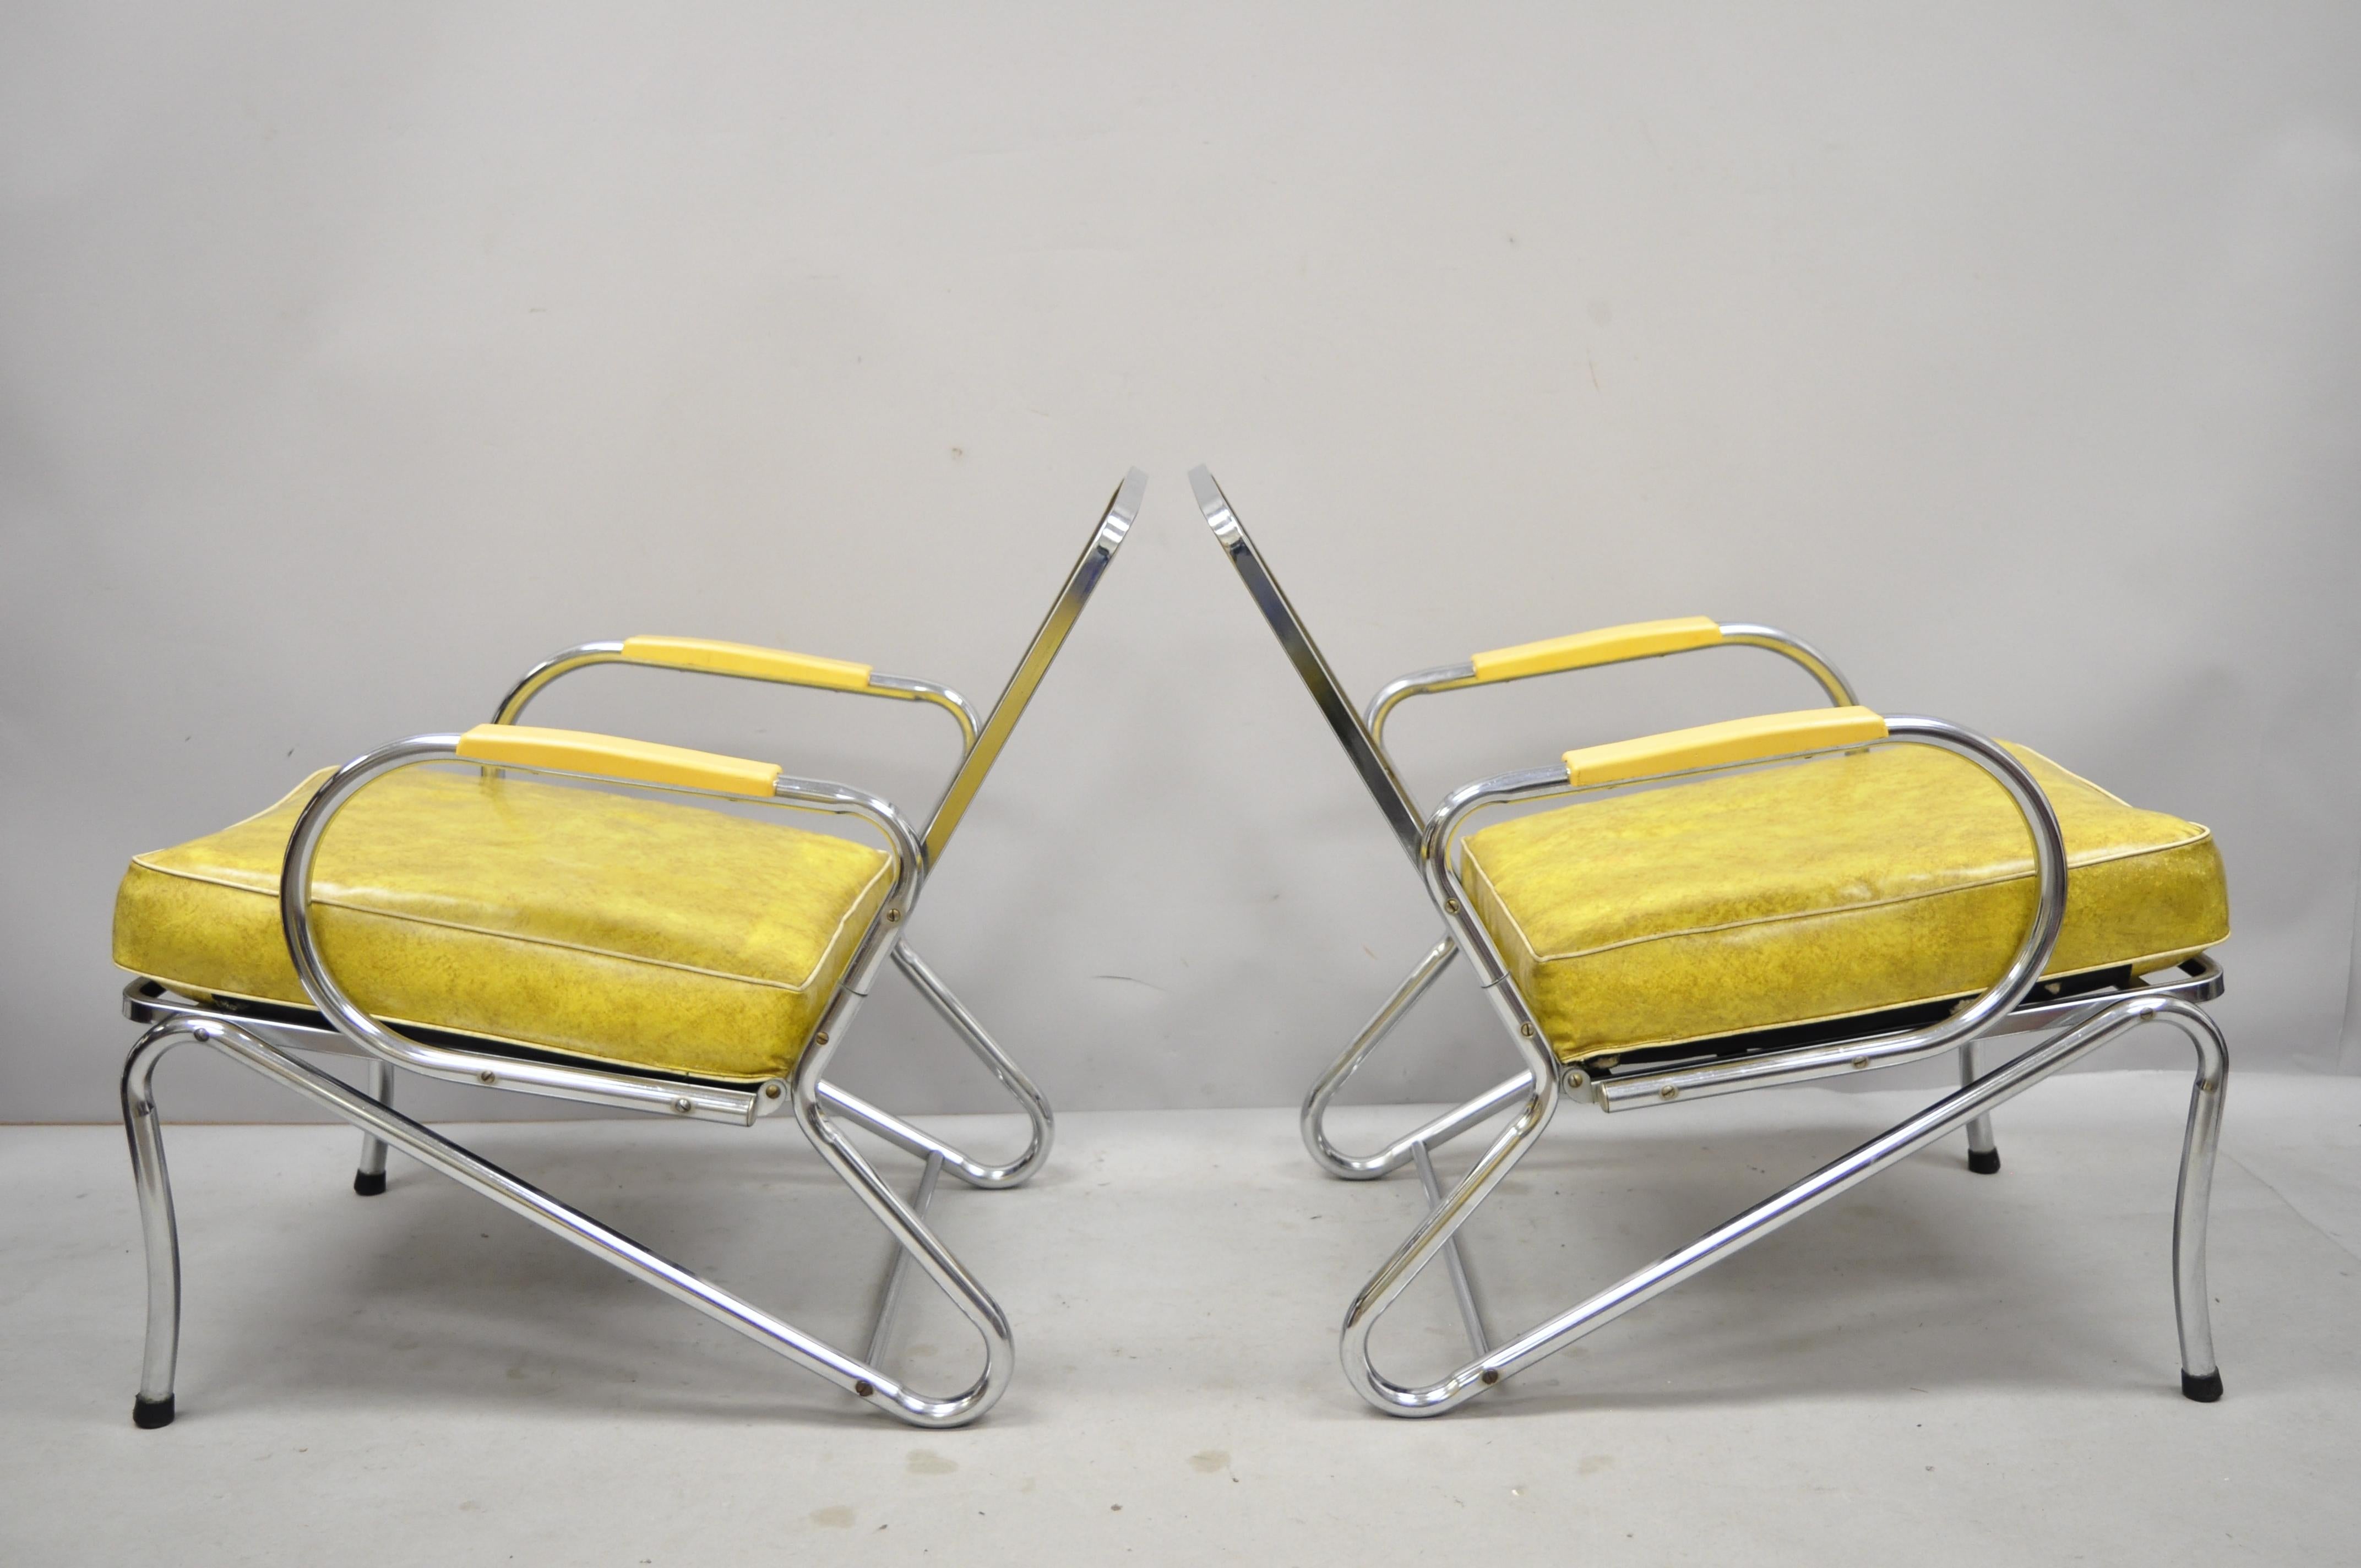 Pareja de sillones club lounge Art Decó tubulares de vinilo amarillo cromado atribuidos a Lloyd Mfg. Incluye cojines de vinilo originales, armazón de metal, líneas modernistas limpias, forma escultural elegante. Fabricante sin confirmar, pero